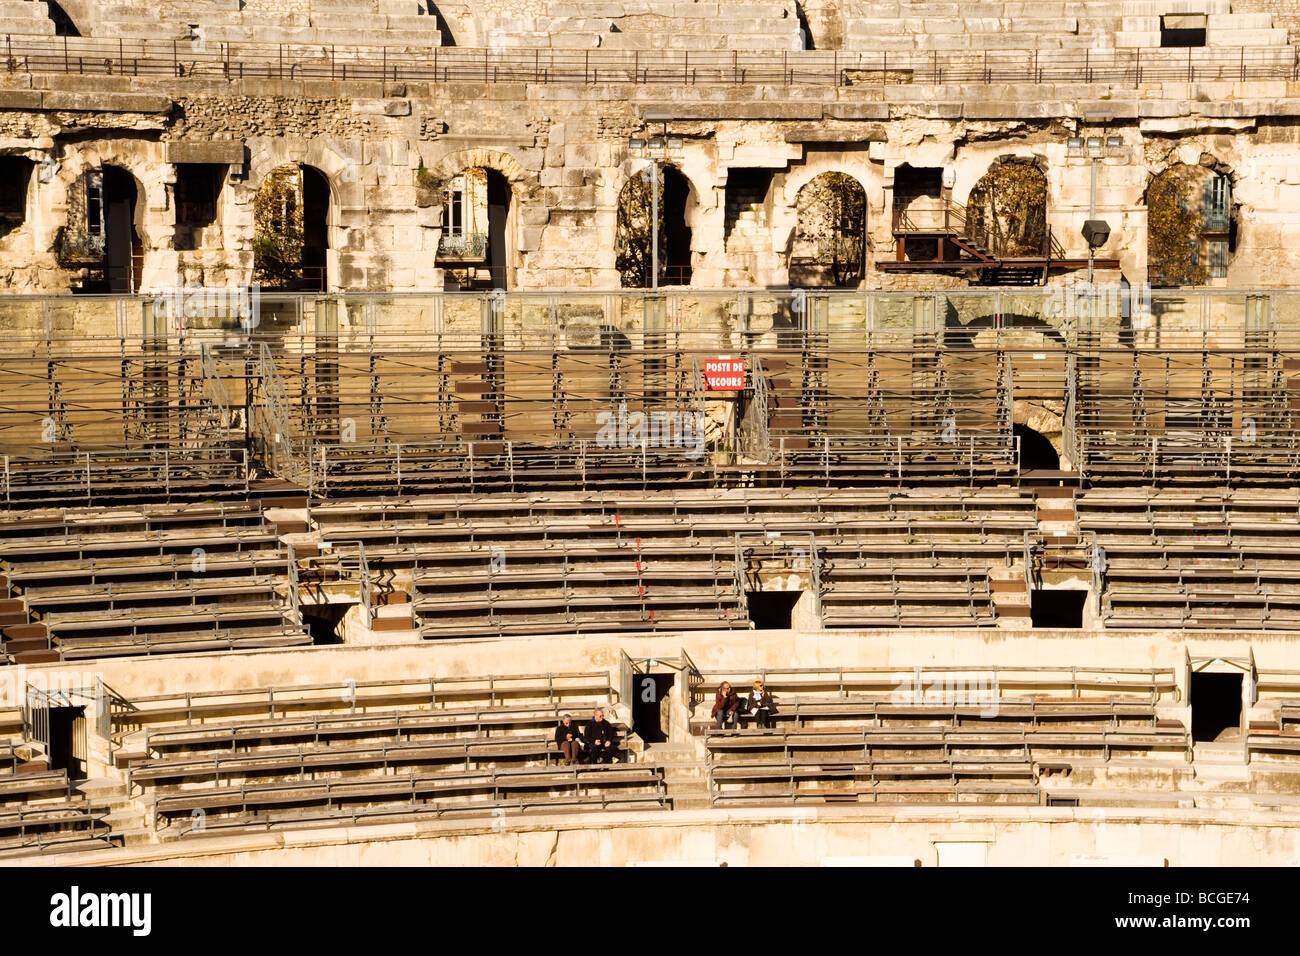 Innenraum Detail Les Arènes de Nîmes, ein römisches Amphitheater in der Stadt Nimes in Südfrankreich.  Jetzt für Stierkämpfe genutzt. Stockfoto